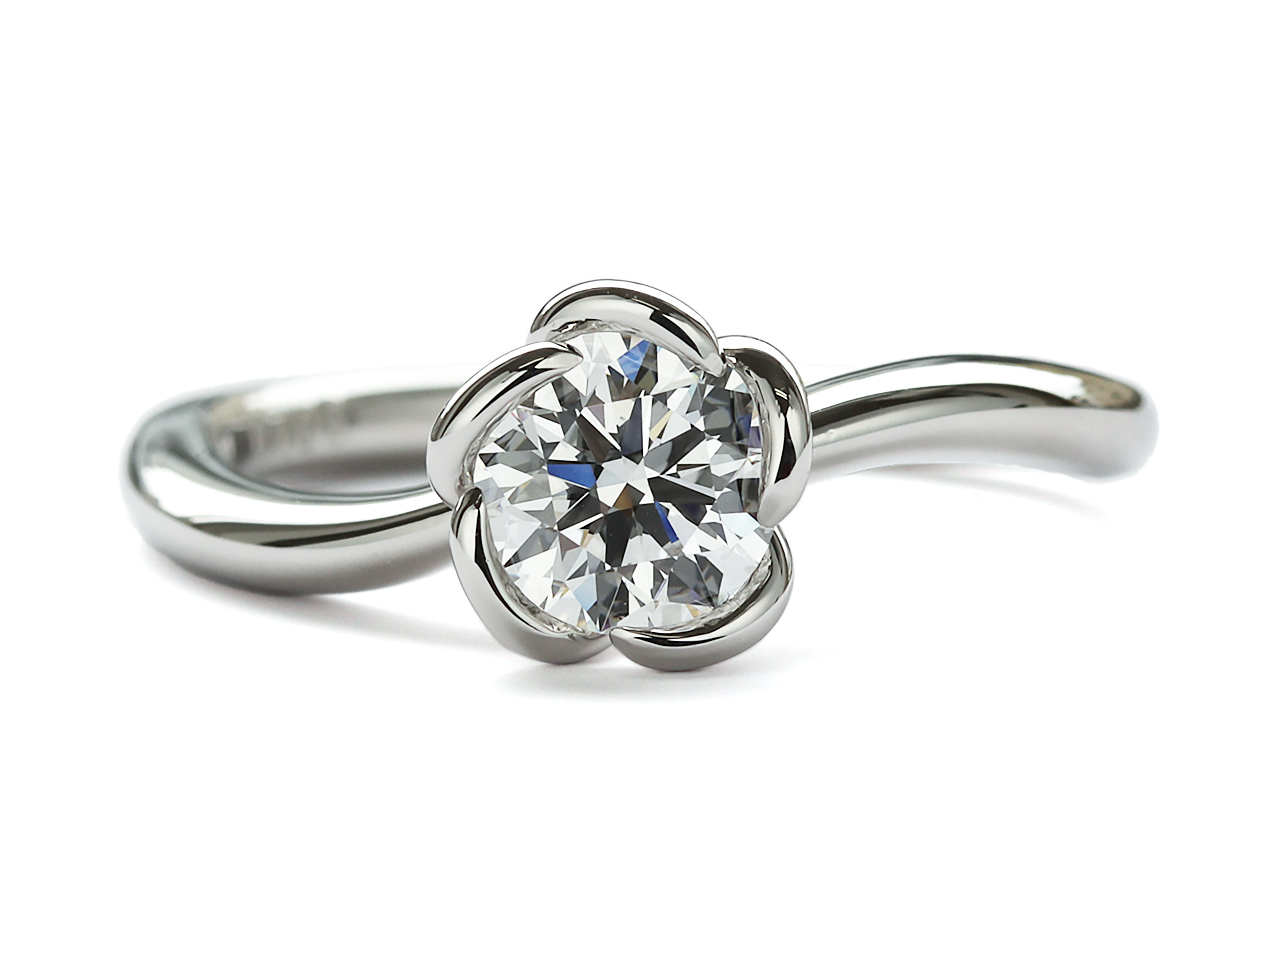 彼女が好きなデザイン、彼が渡したい良質なダイヤで婚約指輪を